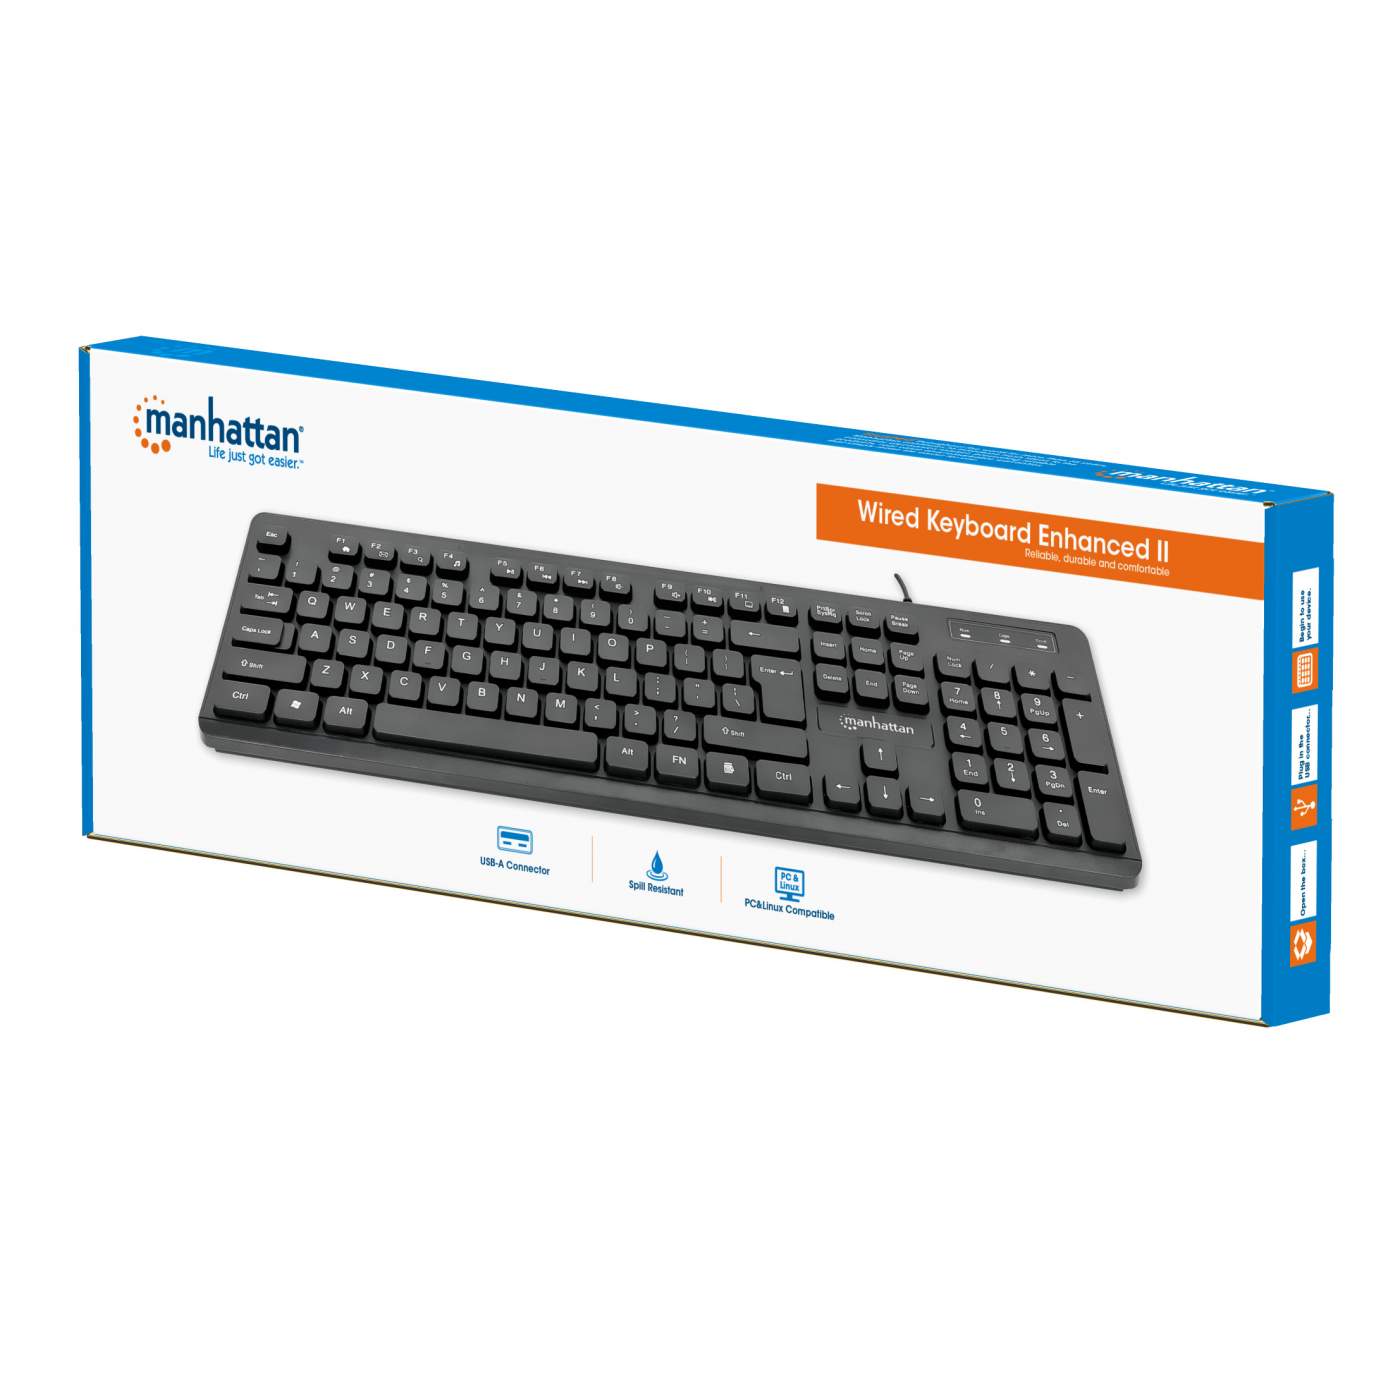 Wired Keyboard Enhanced II Packaging Image 2